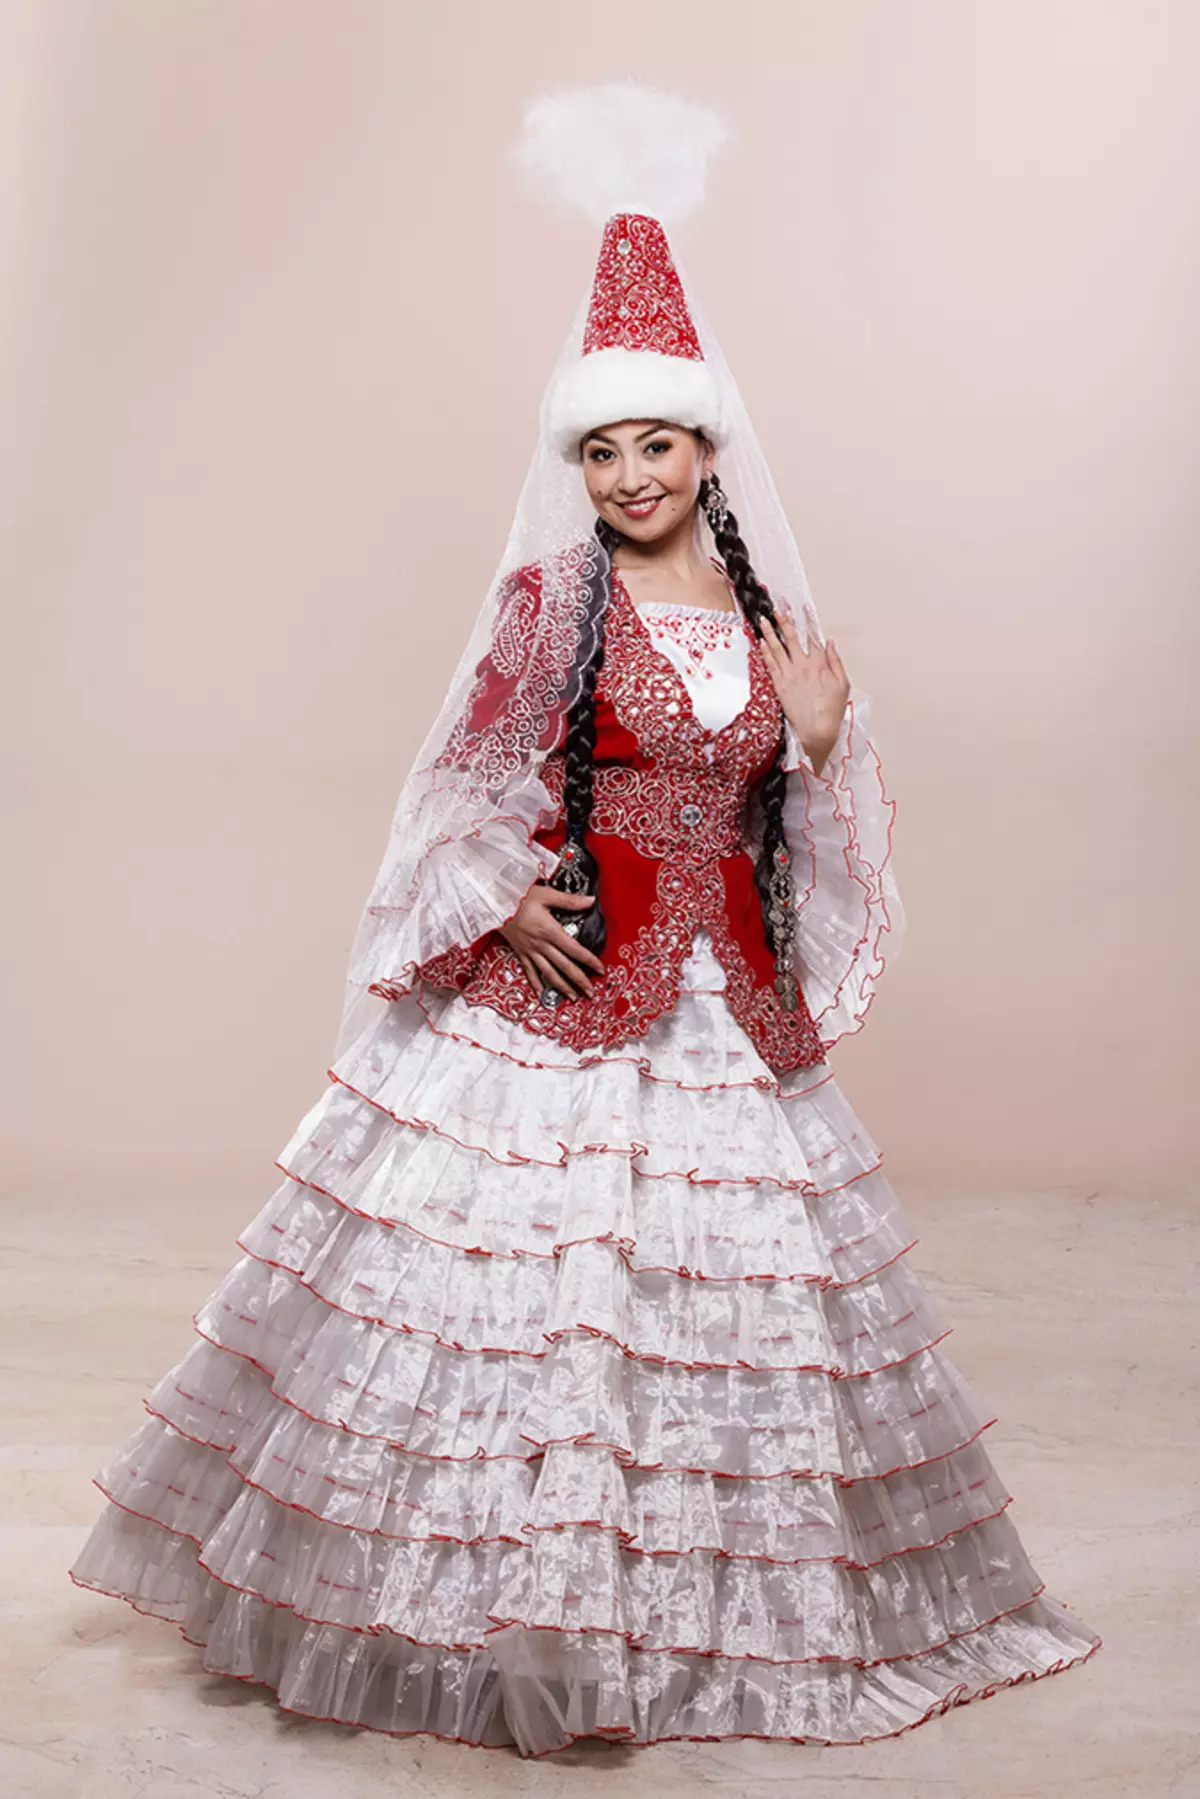 Kasachh National Kostüm (68 Fotoen): Weiblech traditionnell Kostüm Kazakhs, Folk Outfit fir Meedchen aus Kazakhstan 842_10